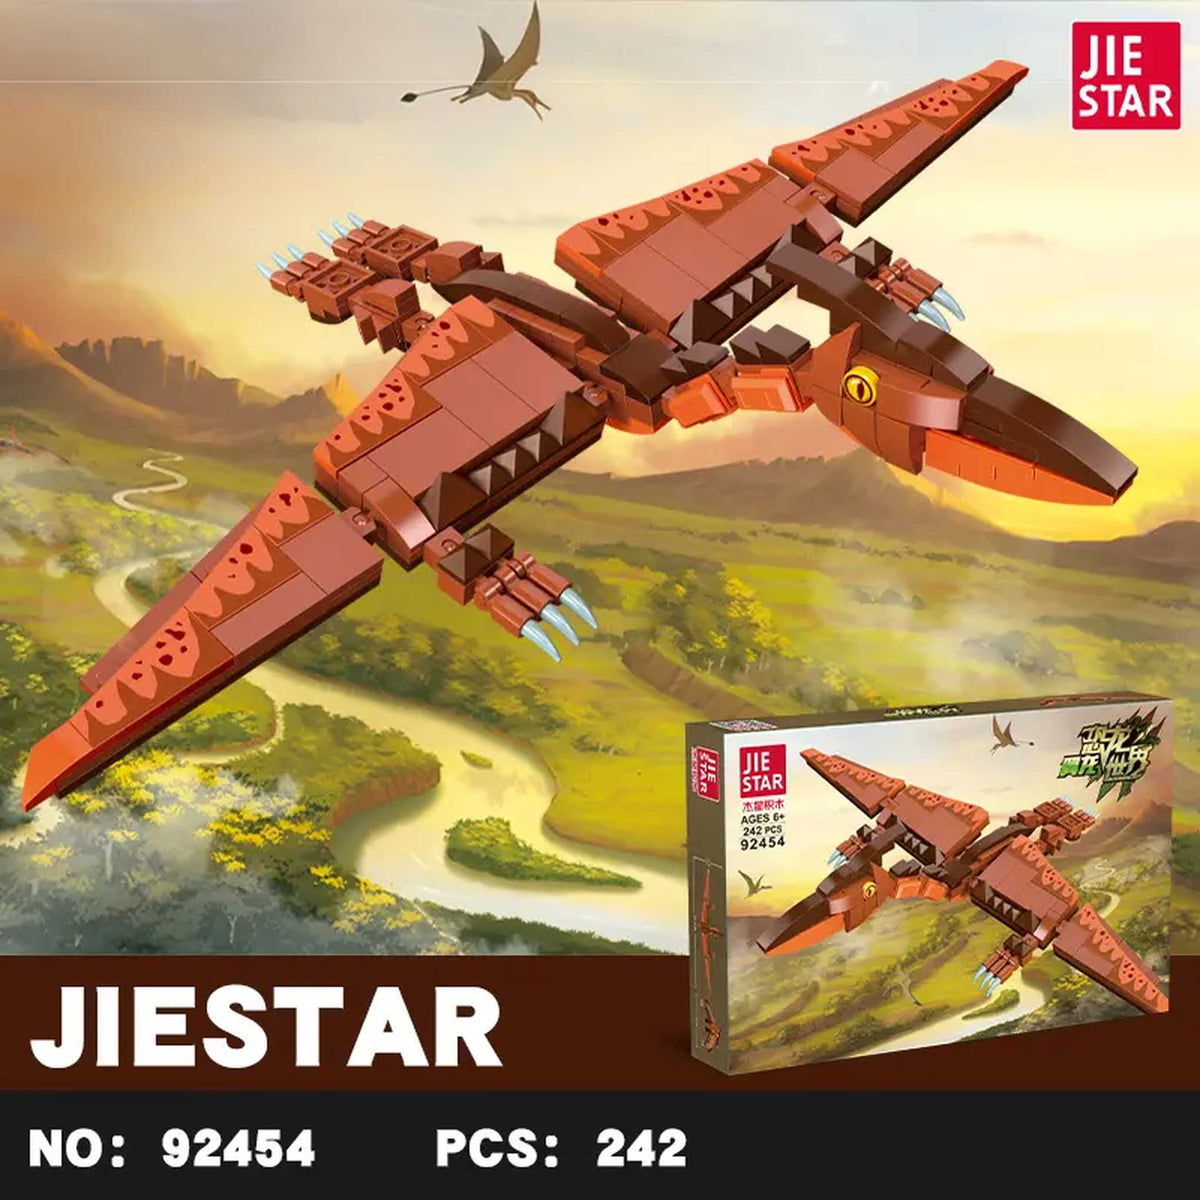 JS92454 - Flugsaurier (JieStar)